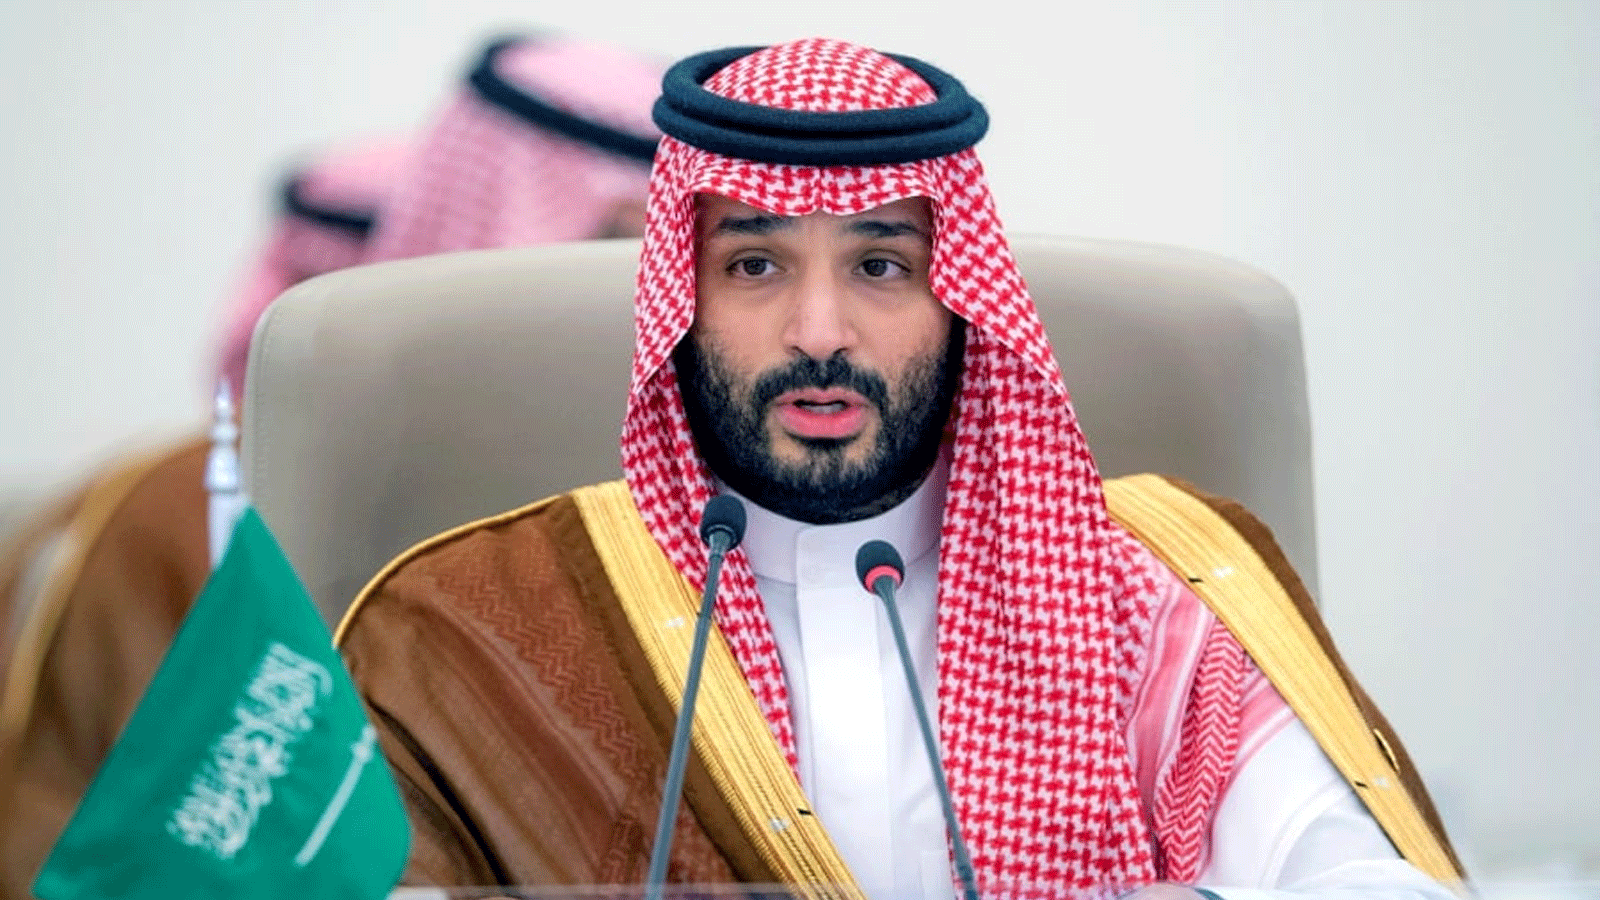 صورة لولي العهد السعودي الأمير محمد بن سلمان وهو يتحدث خلال قمة دول مجلس التعاون الخليجي وآسيا الوسطى في جدة